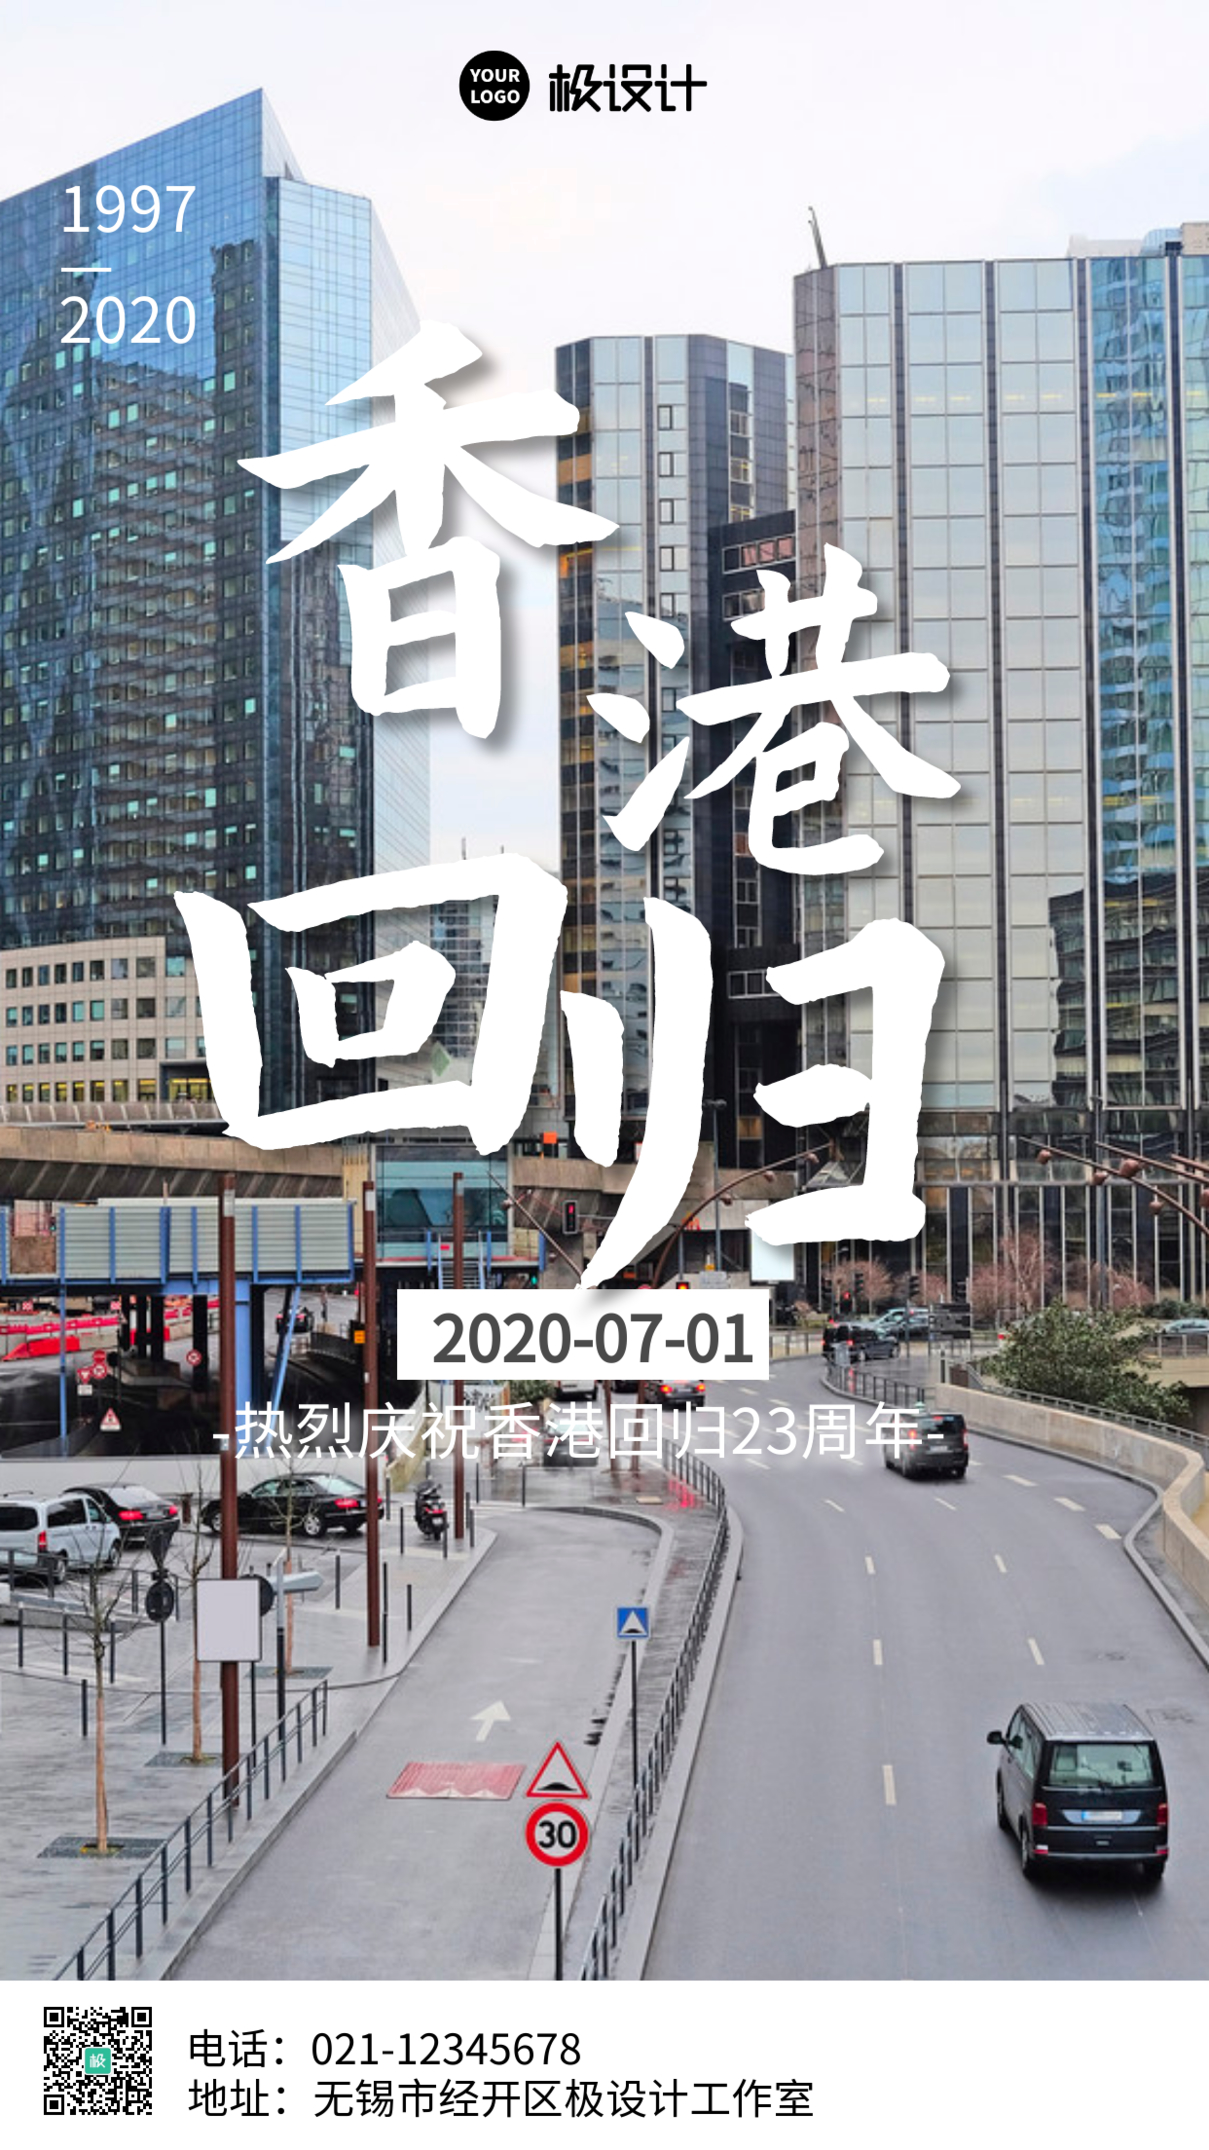 摄影风7月1日香港回归纪念日宣传手机海报